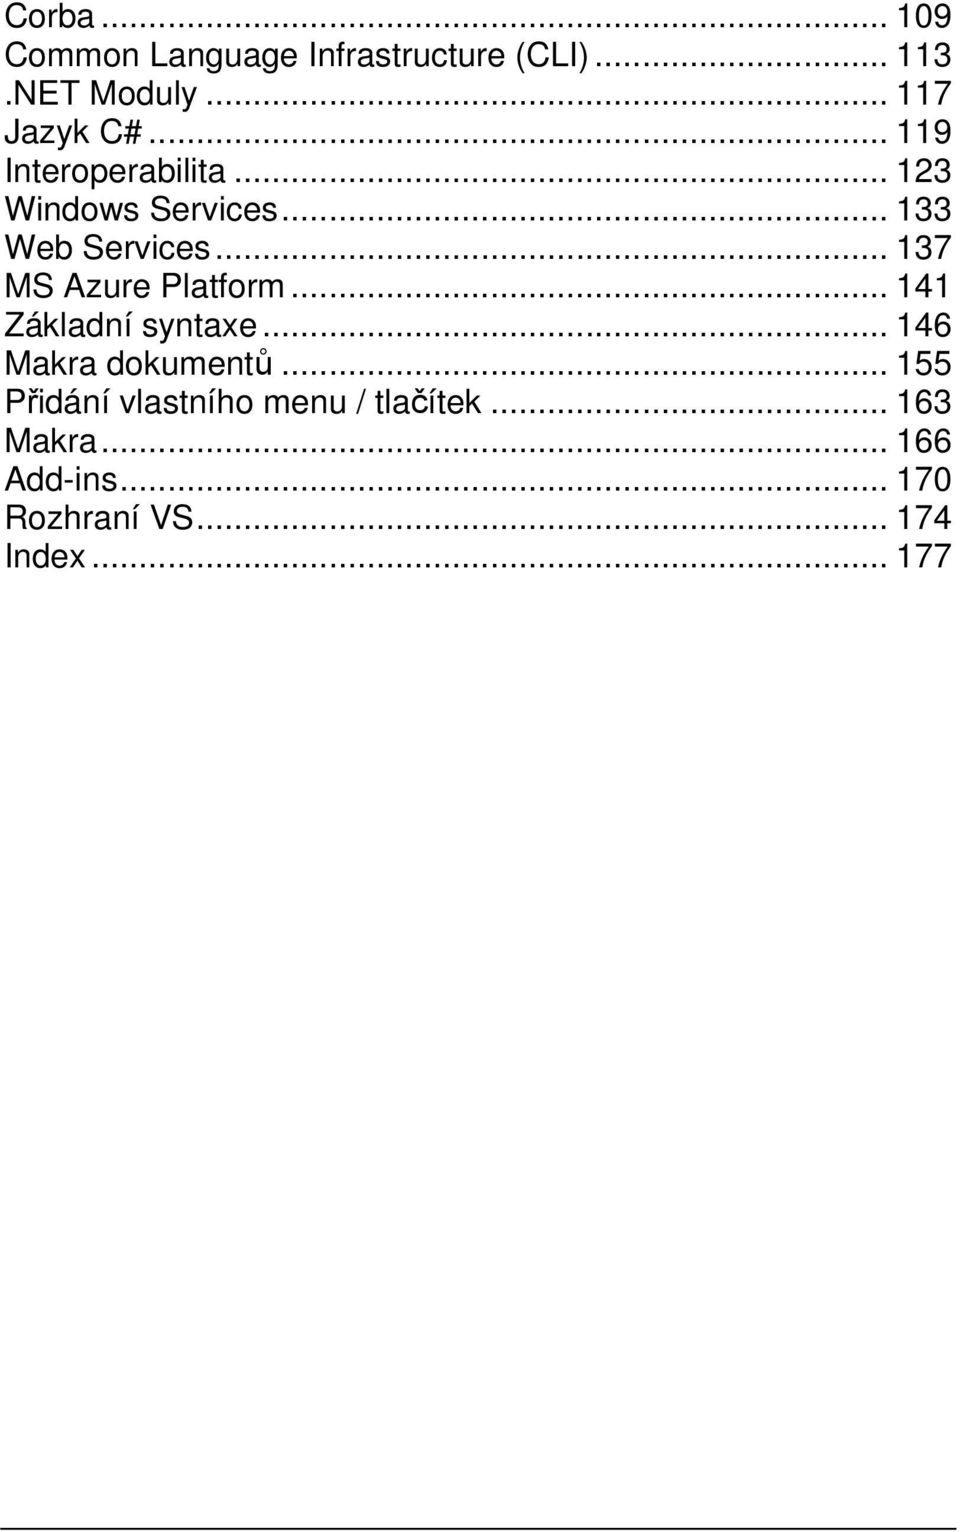 .. 137 MS Azure Platform... 141 Základní syntaxe... 146 Makra dokumentů.